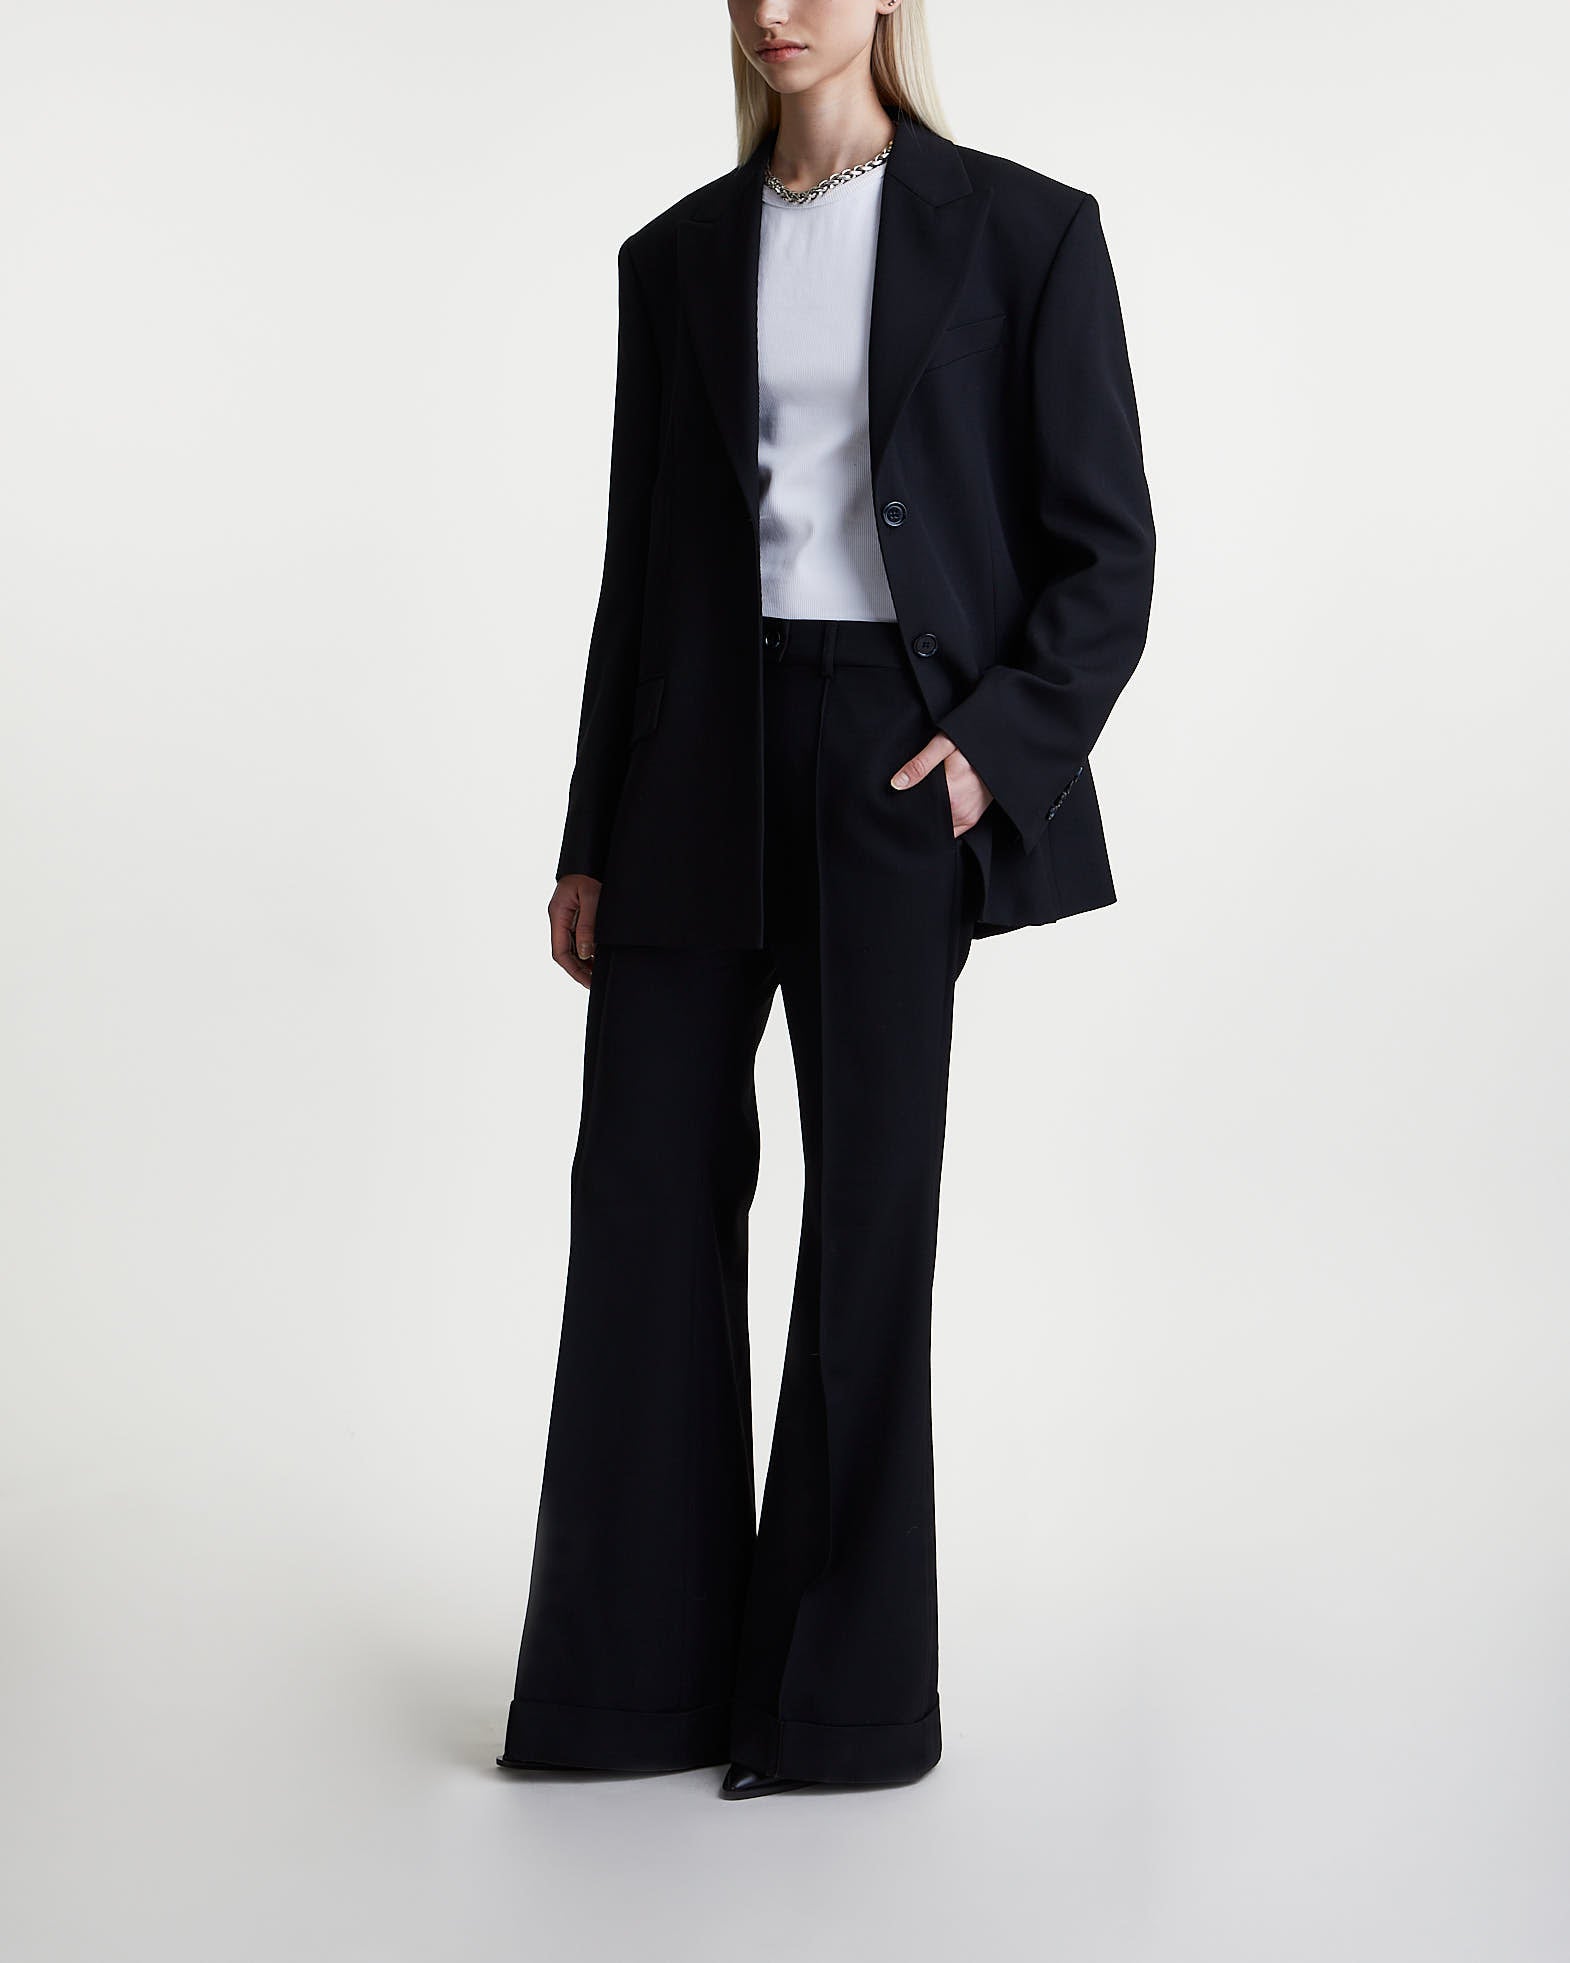 Acne Studios Trousers Tailored Suit Flared Black von Acne Studios